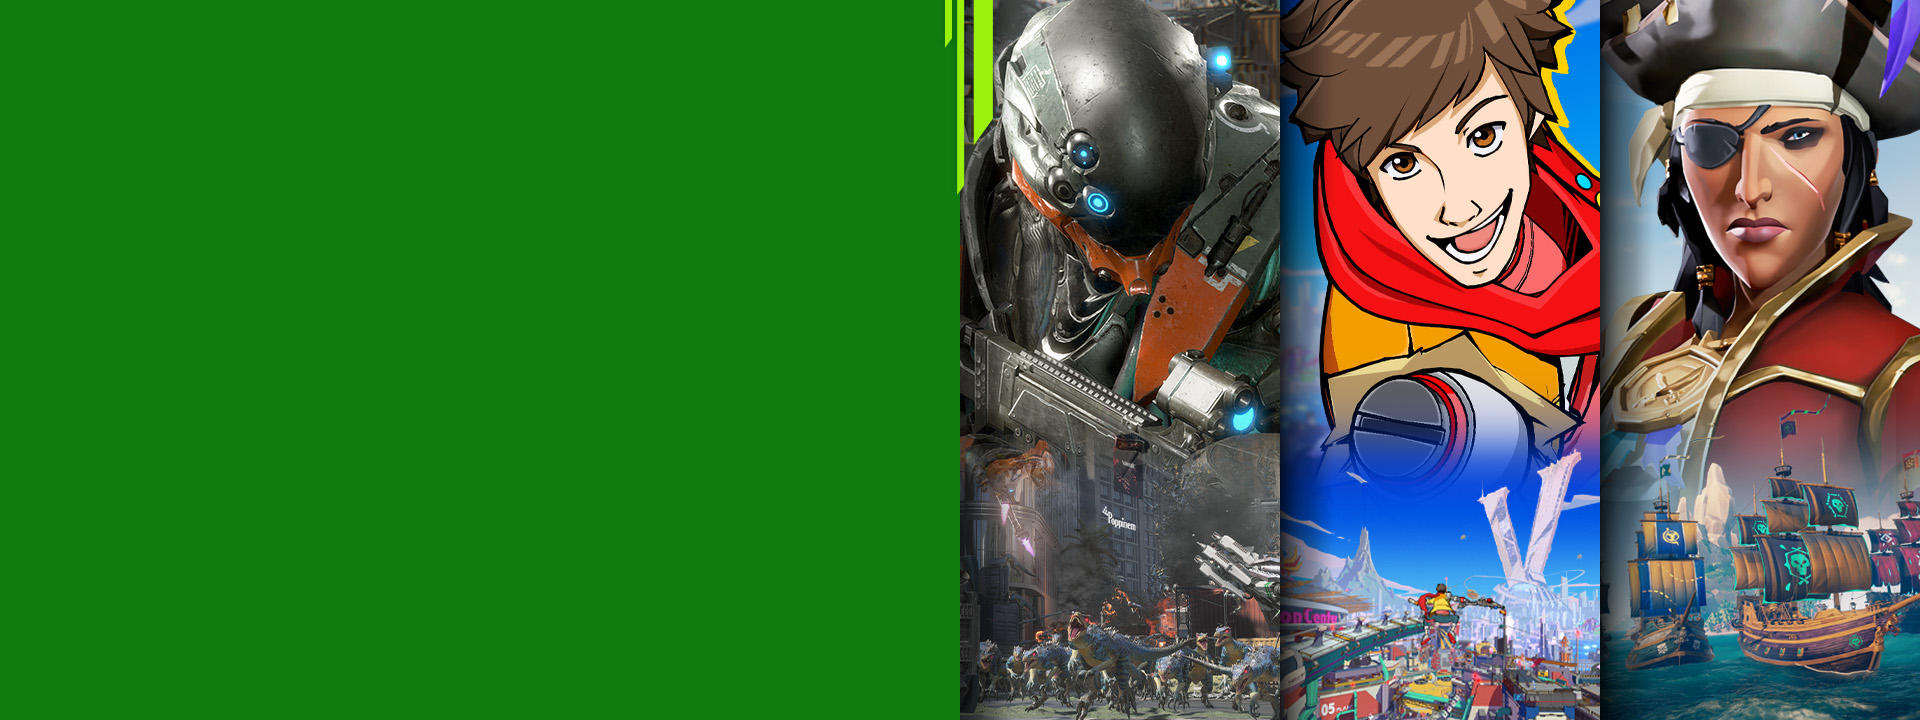 Vista frontal de diferentes personajes de juegos de Xbox de Exoprimal, Hi-Fi Rush y Sea of Thieves.